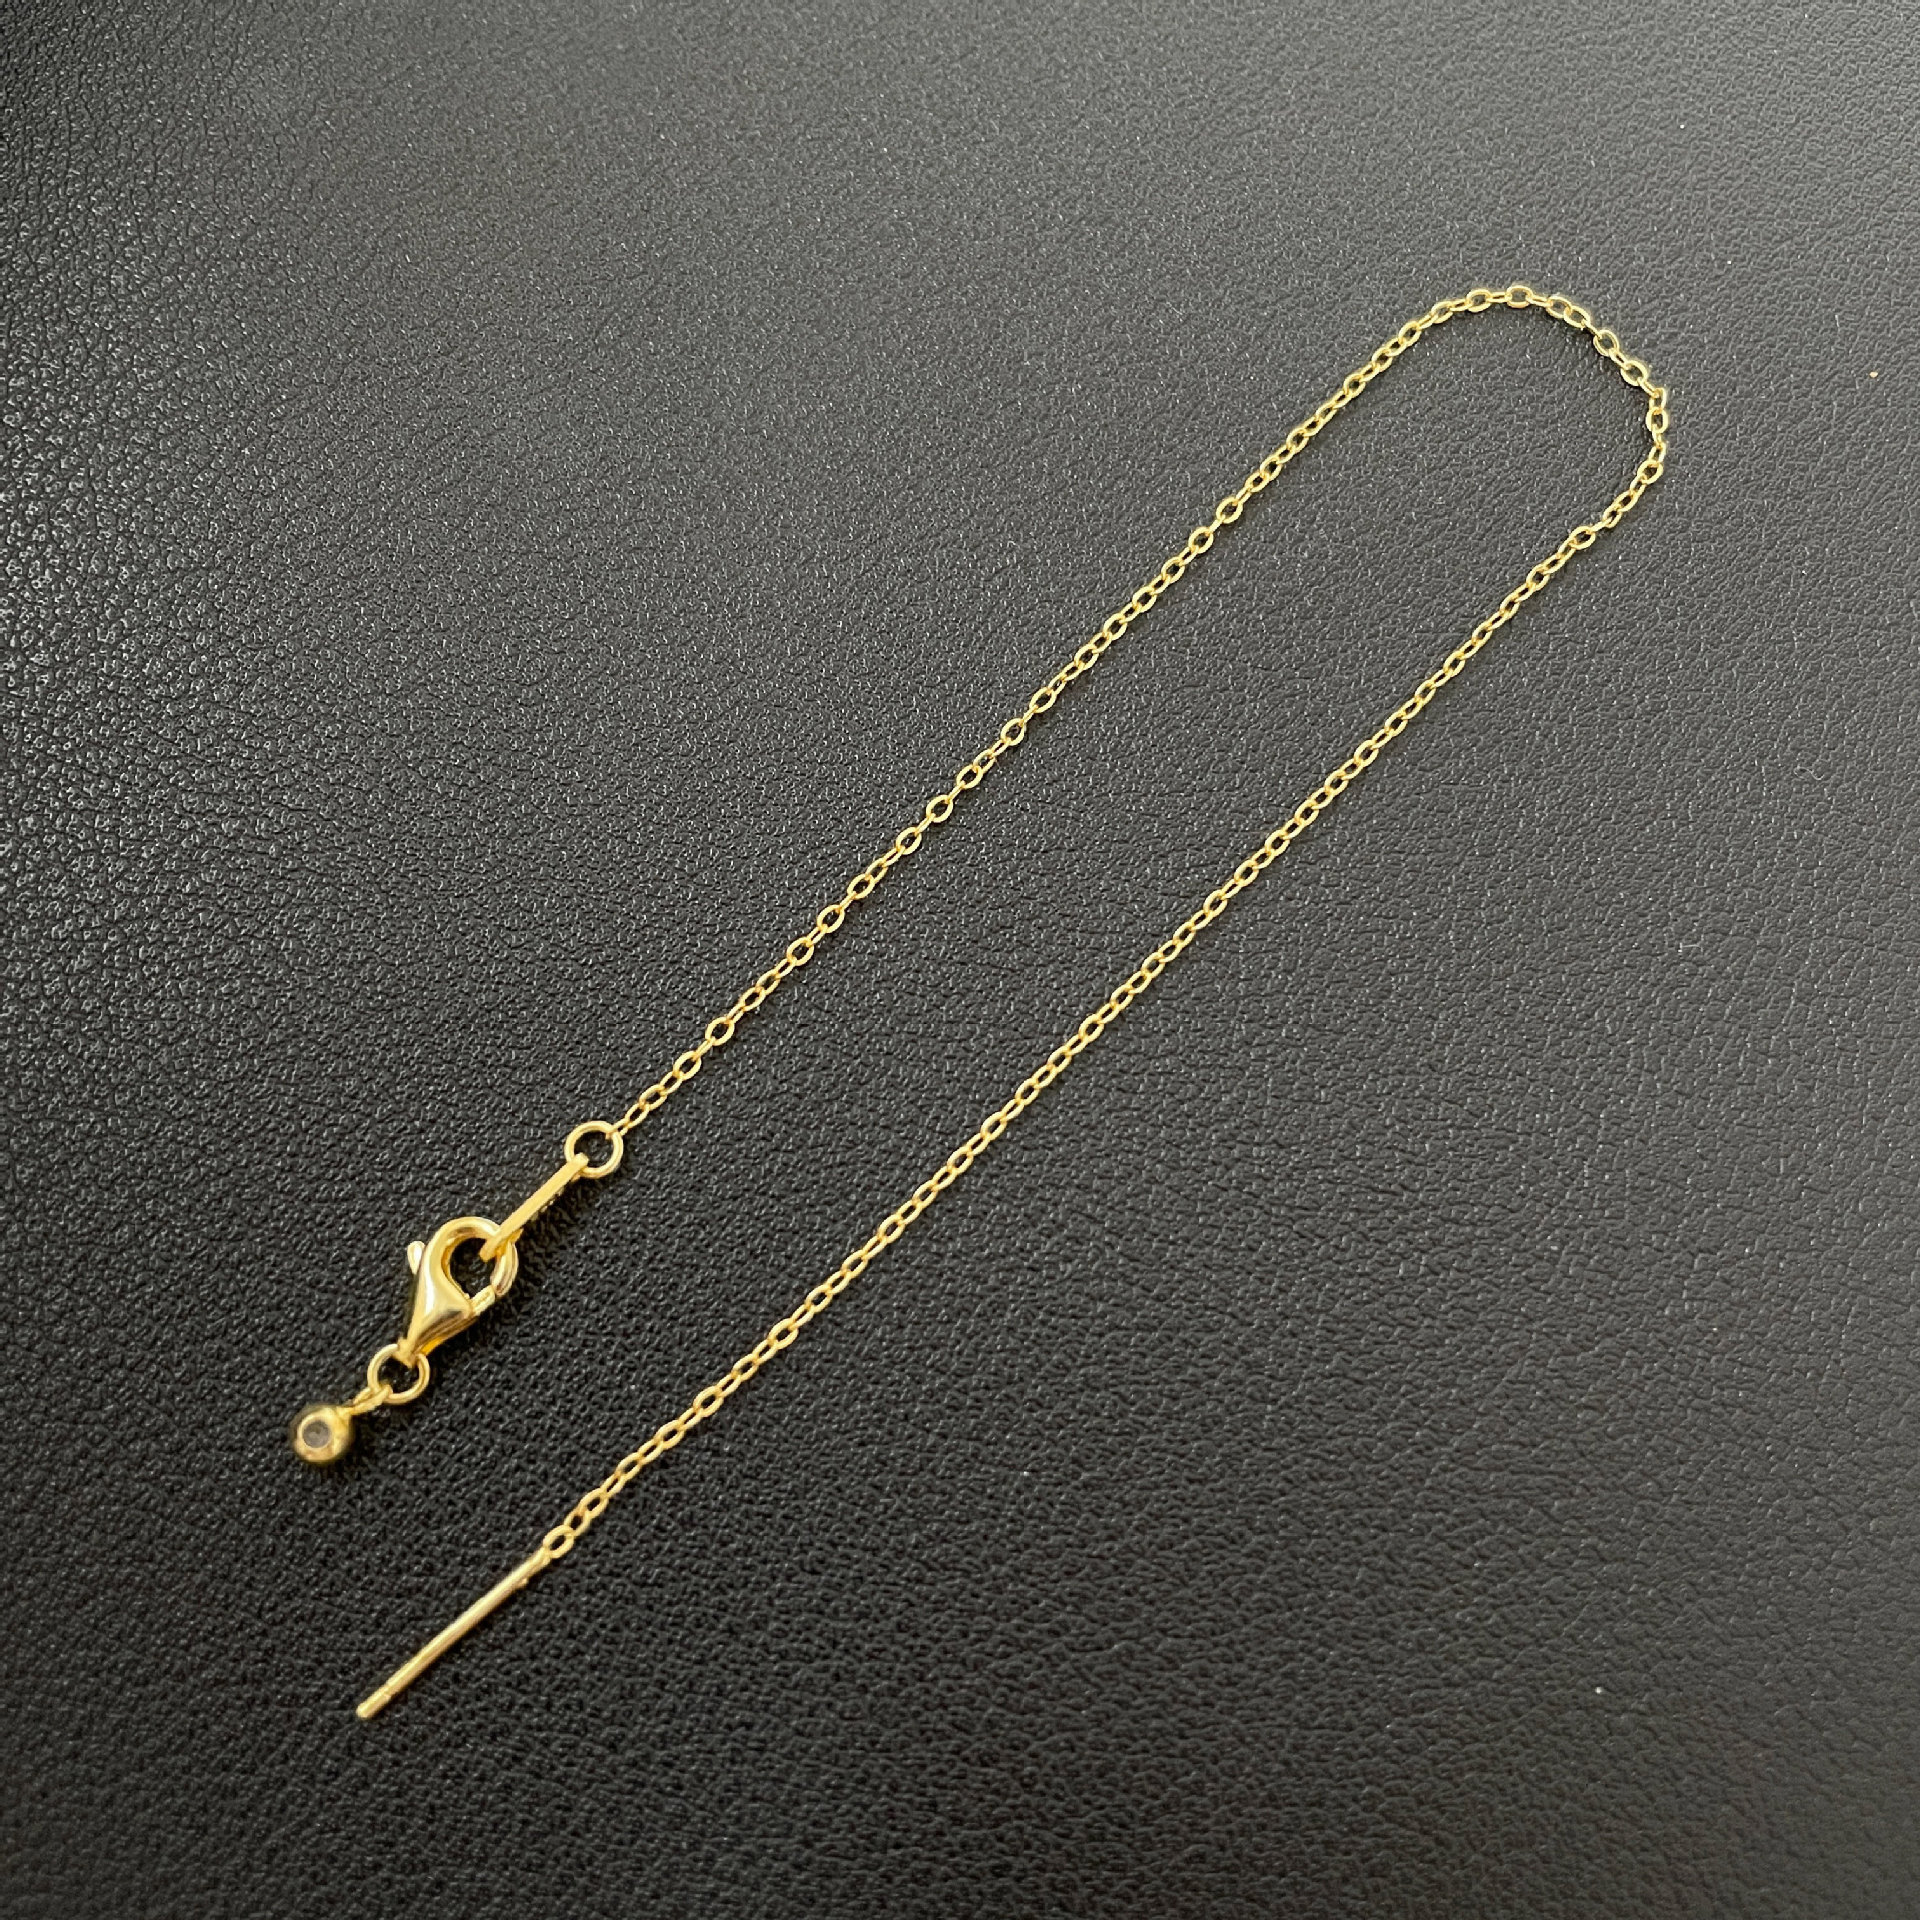 4:Gold o chain